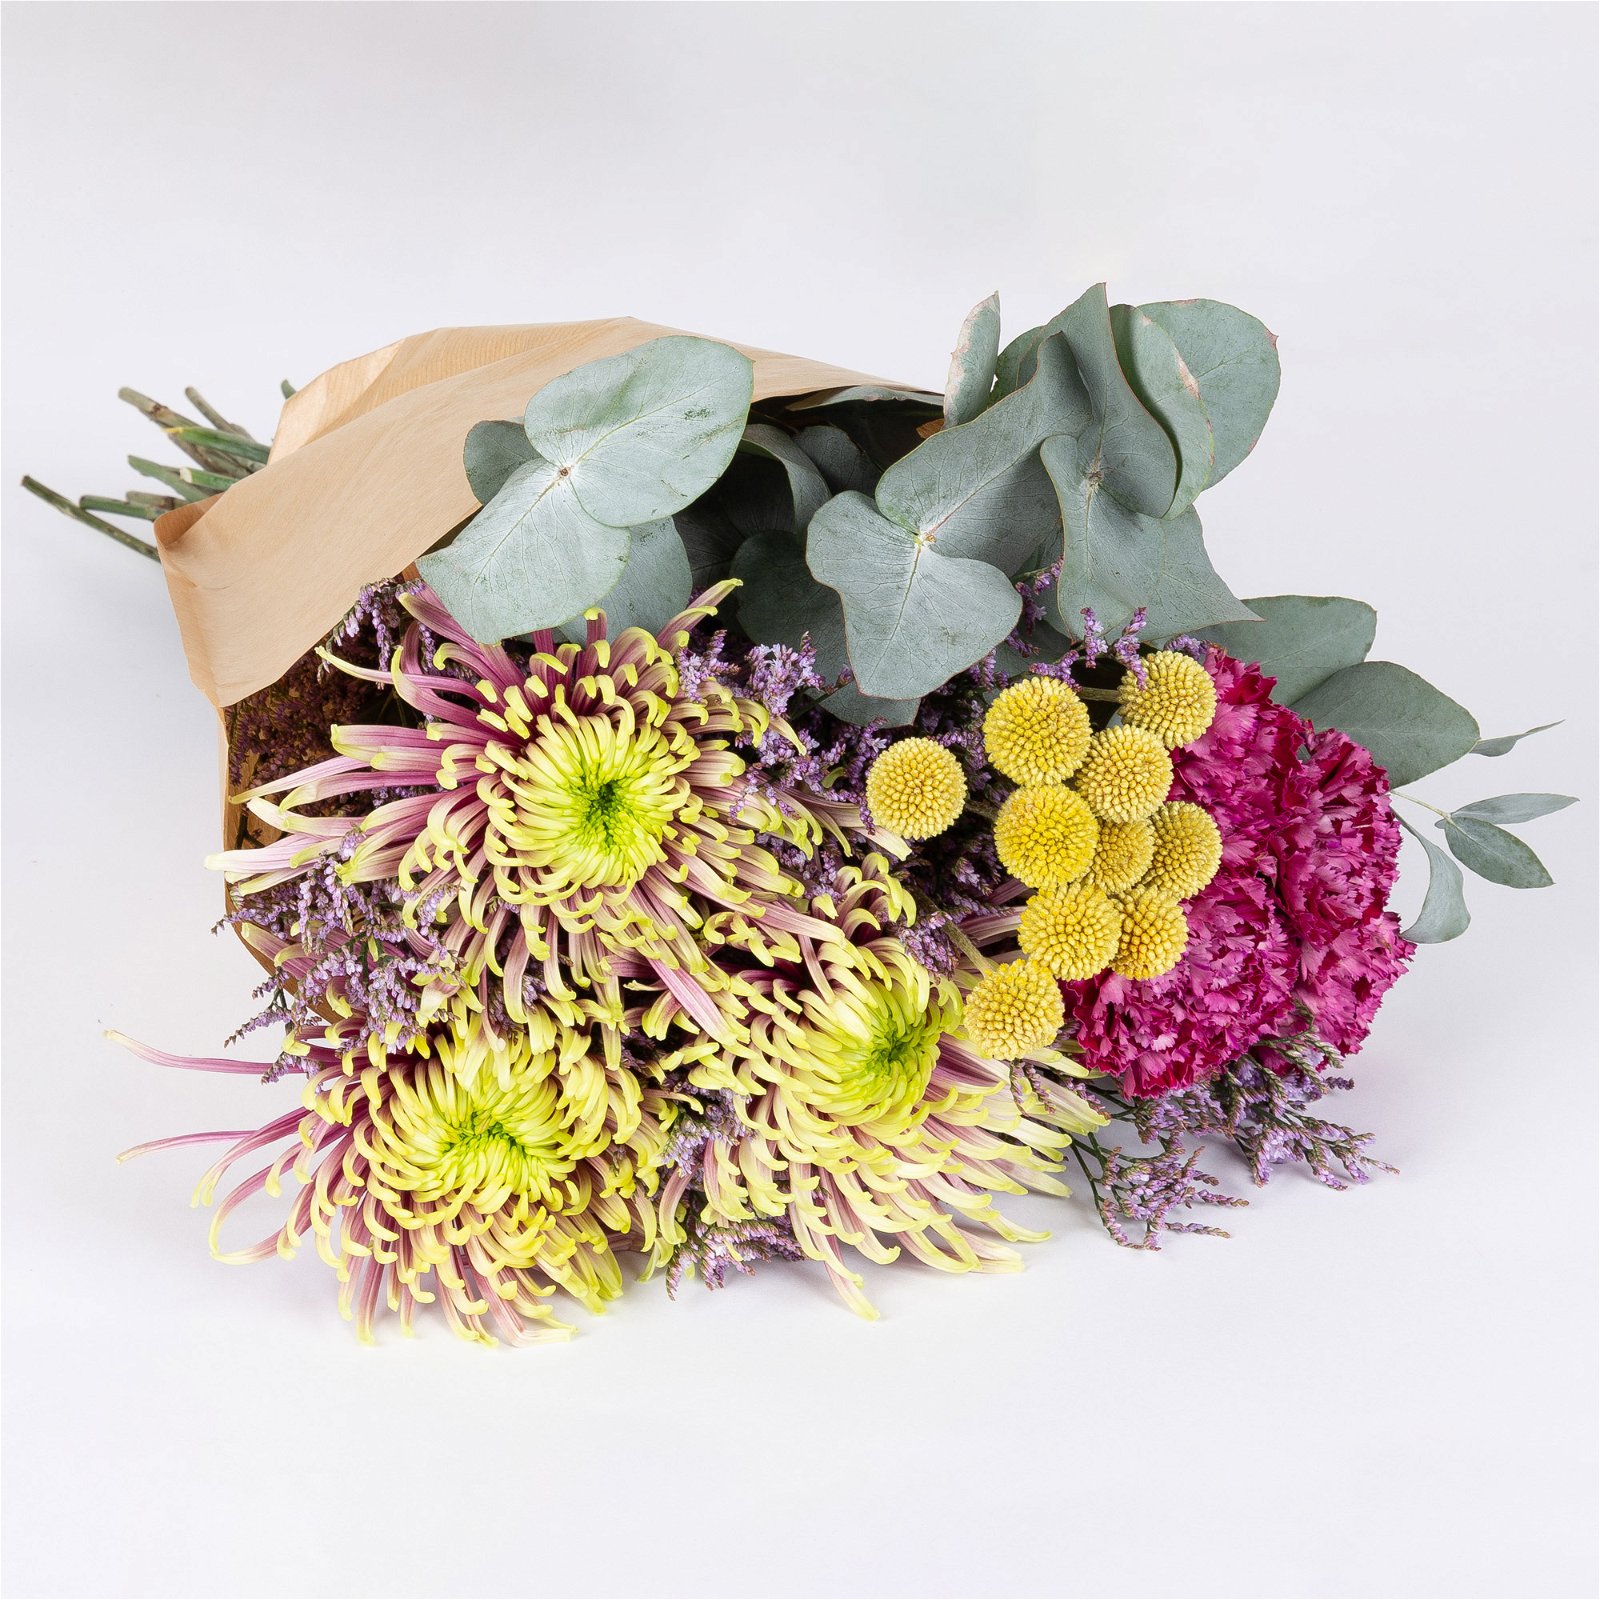 Gemischter Blumenbund 'Baltazar mit Nelke' inkl. gratis Grußkarte